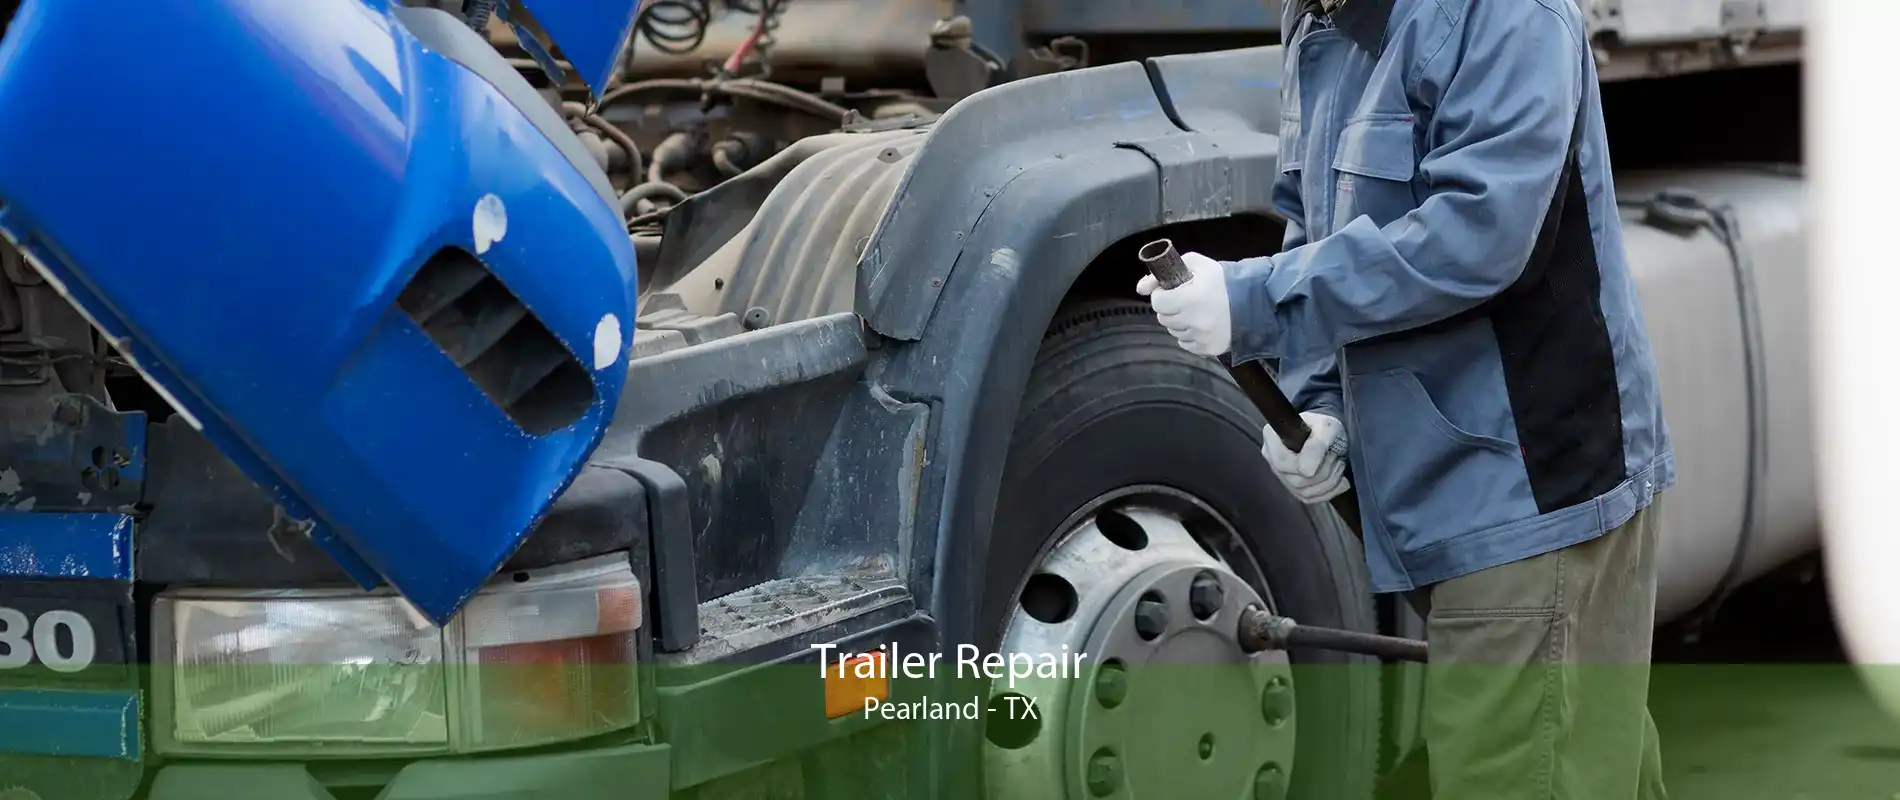 Trailer Repair Pearland - TX